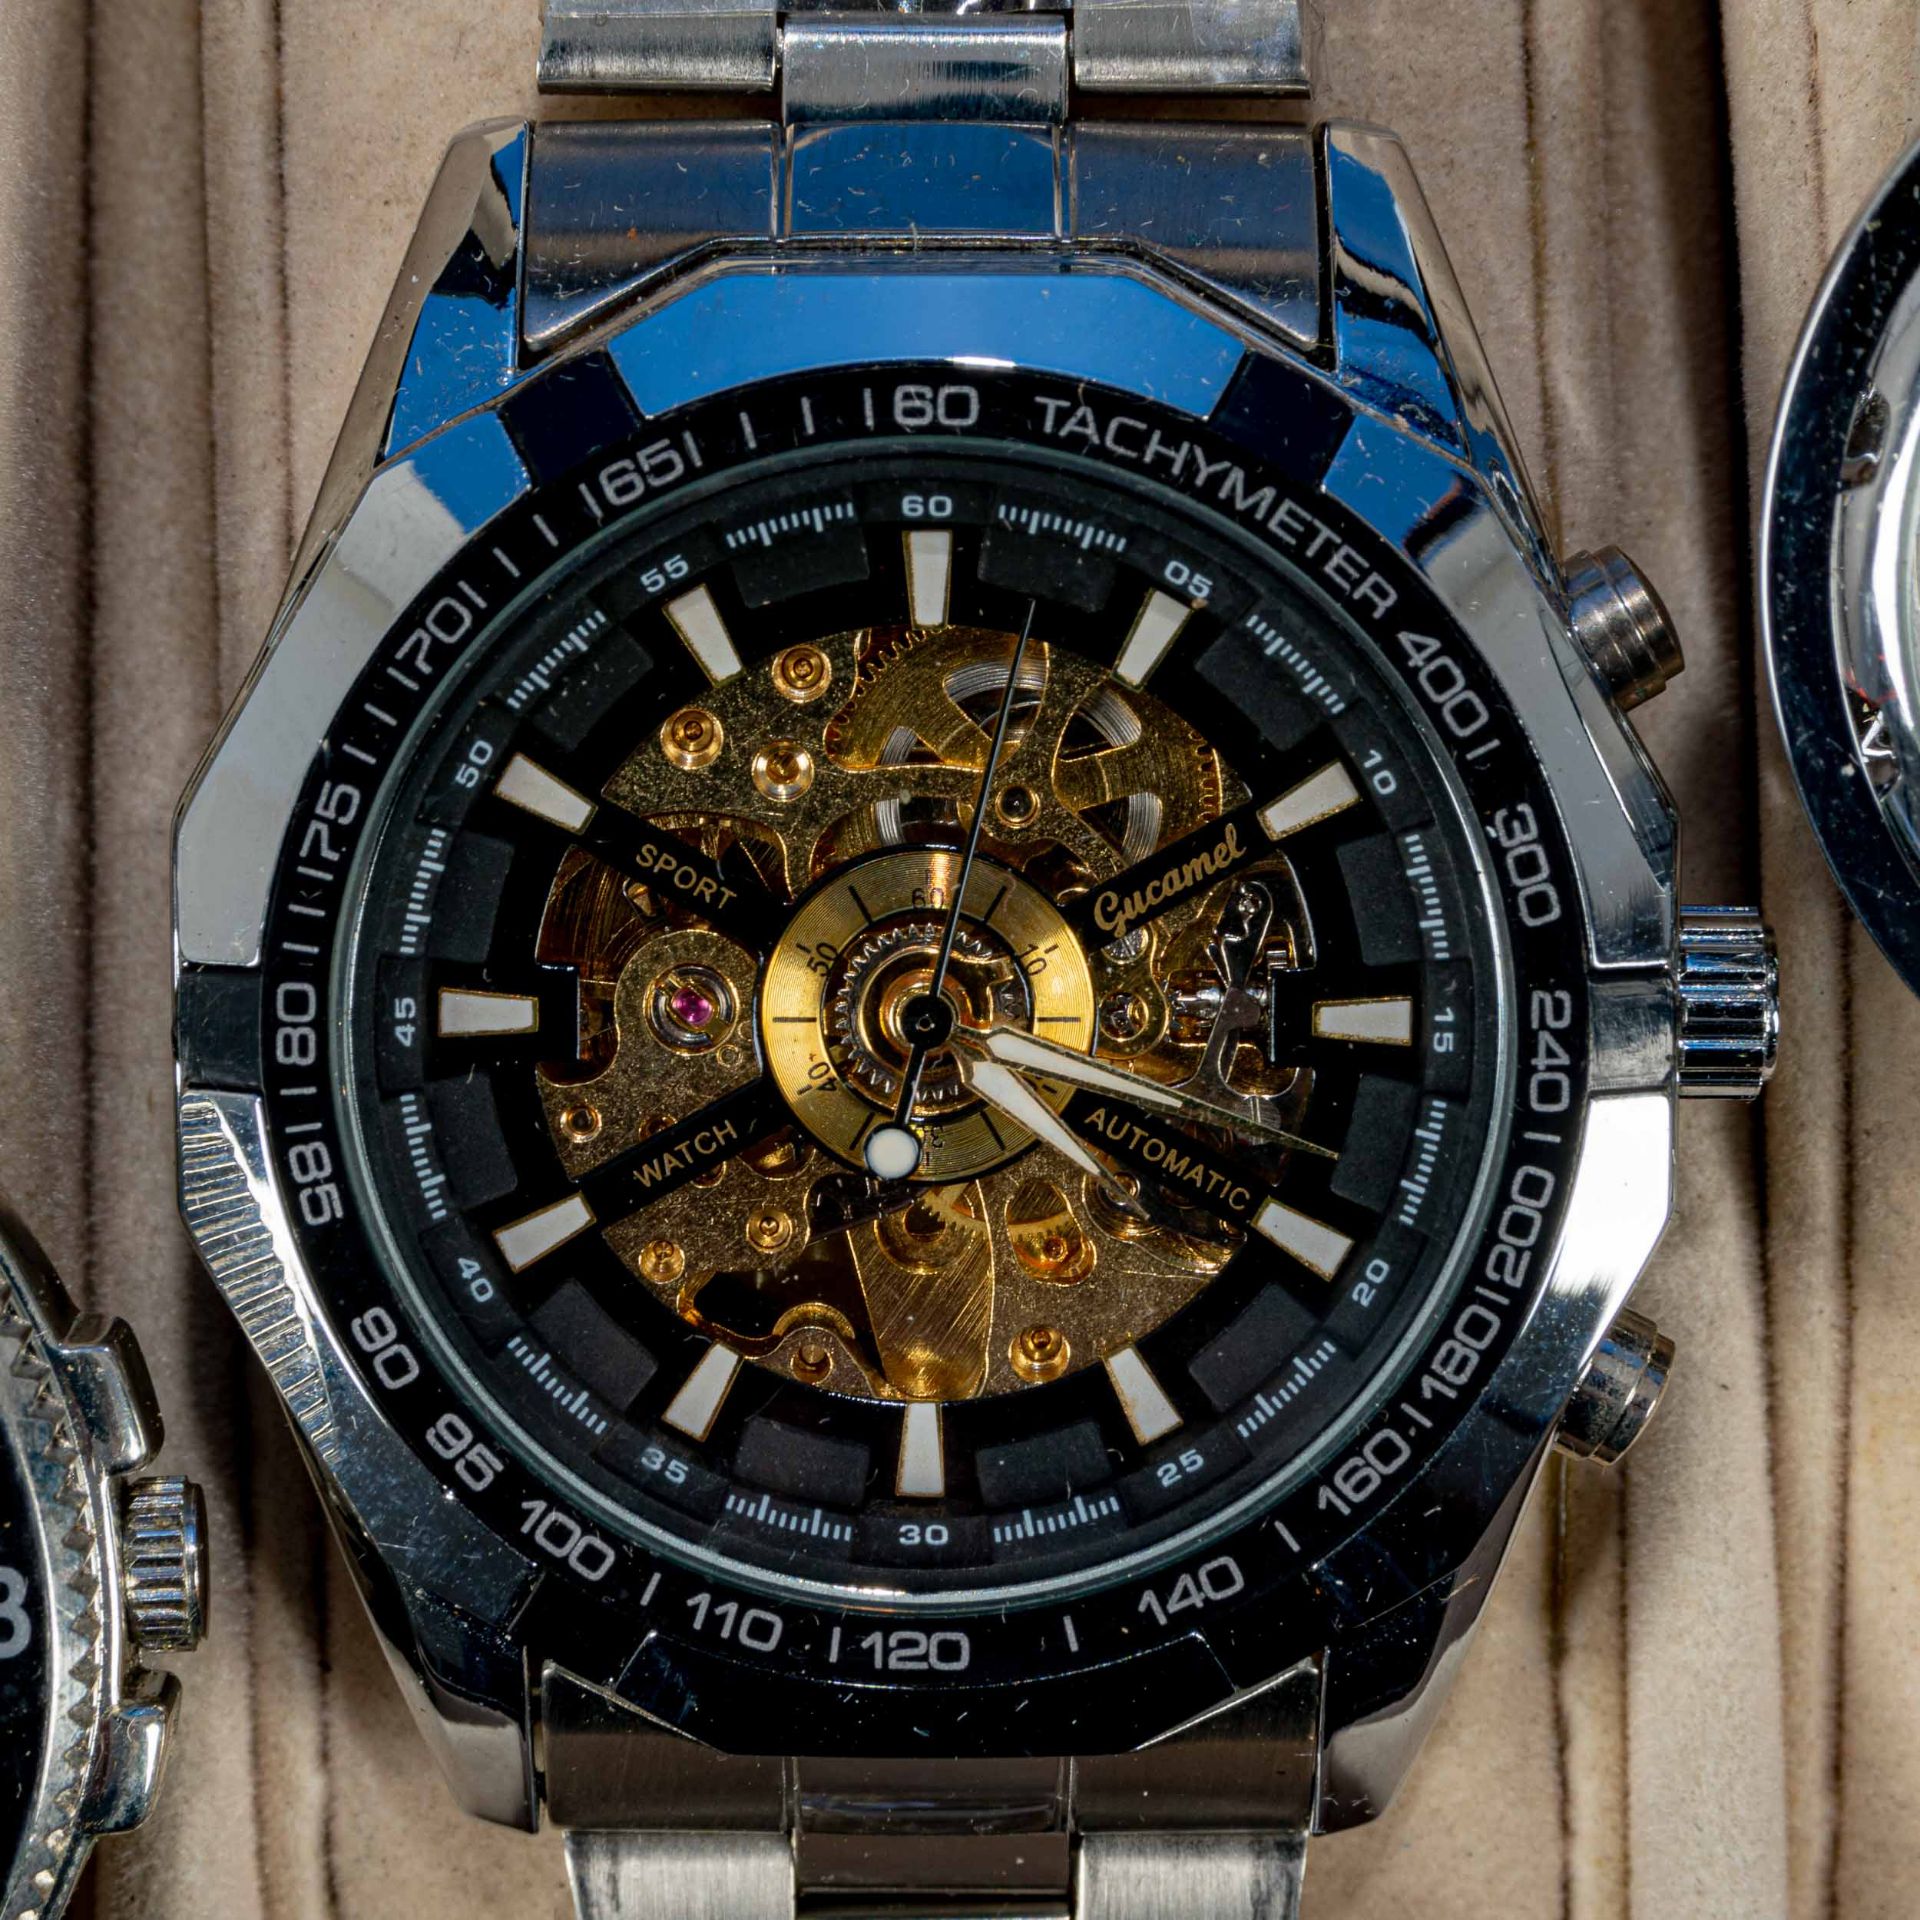 7teilige Uhrensammlung, u. a. der Marke Swatch; versch. Alter, Größen, Materialien, Hersteller, Wer - Image 3 of 8